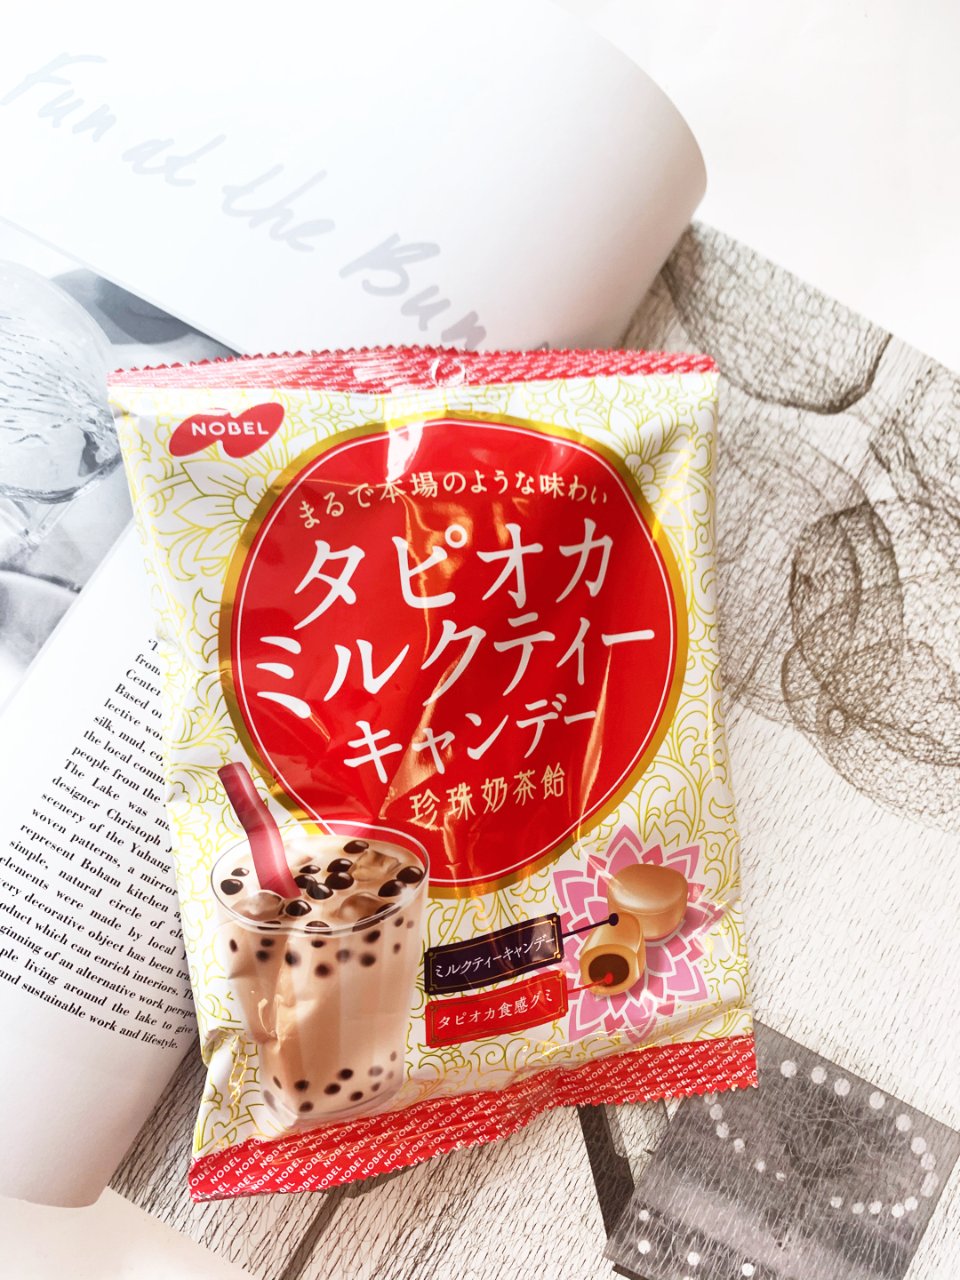 日本超畅销的【NOBEL诺贝尔黑糖珍珠奶...